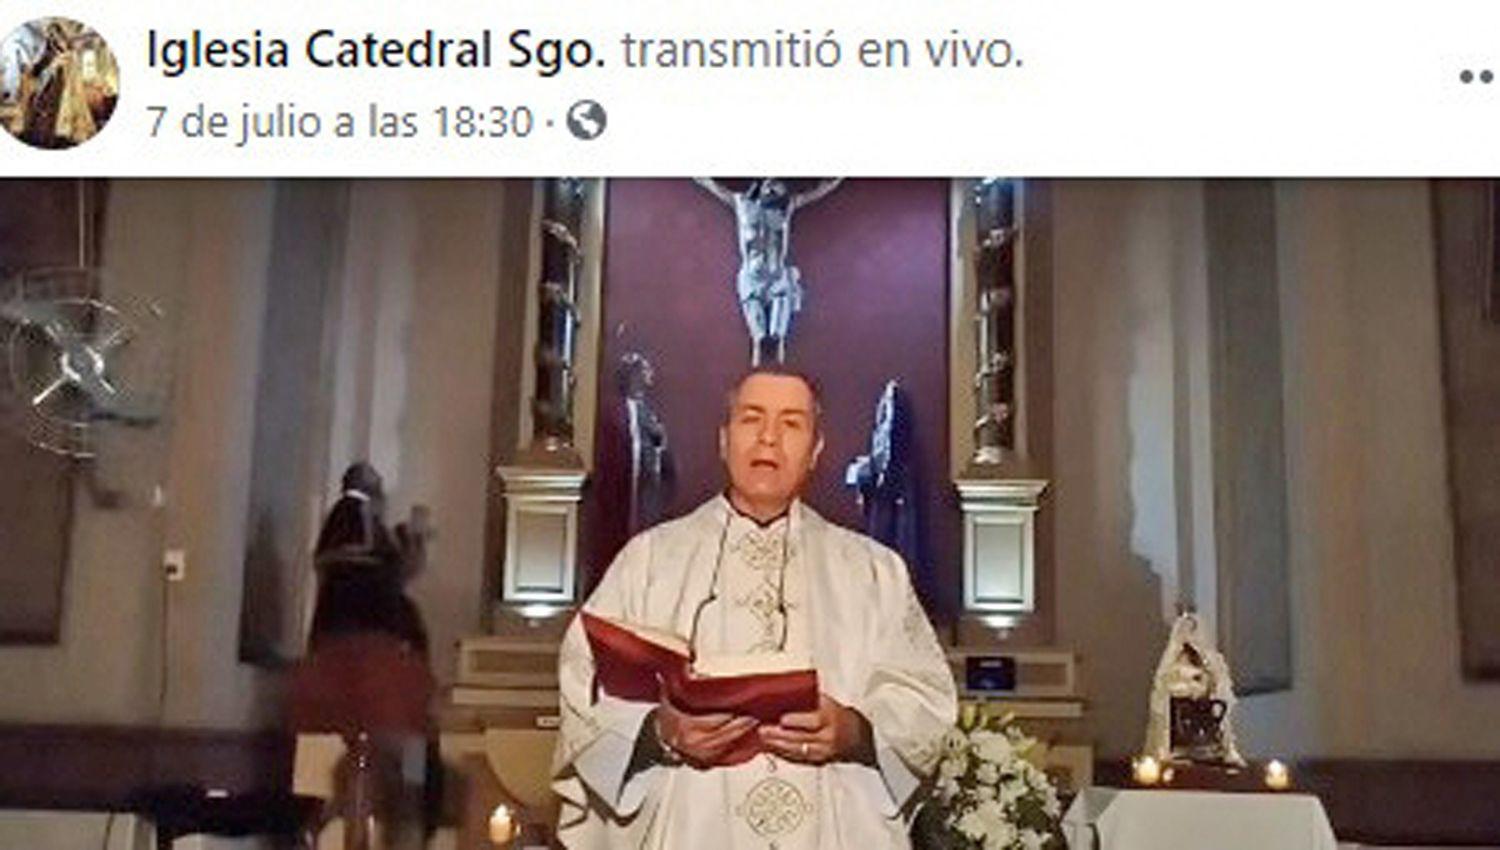 Las celebraciones son transmitidas por Facebook y est�n a cargo del padre Rolando Tenti